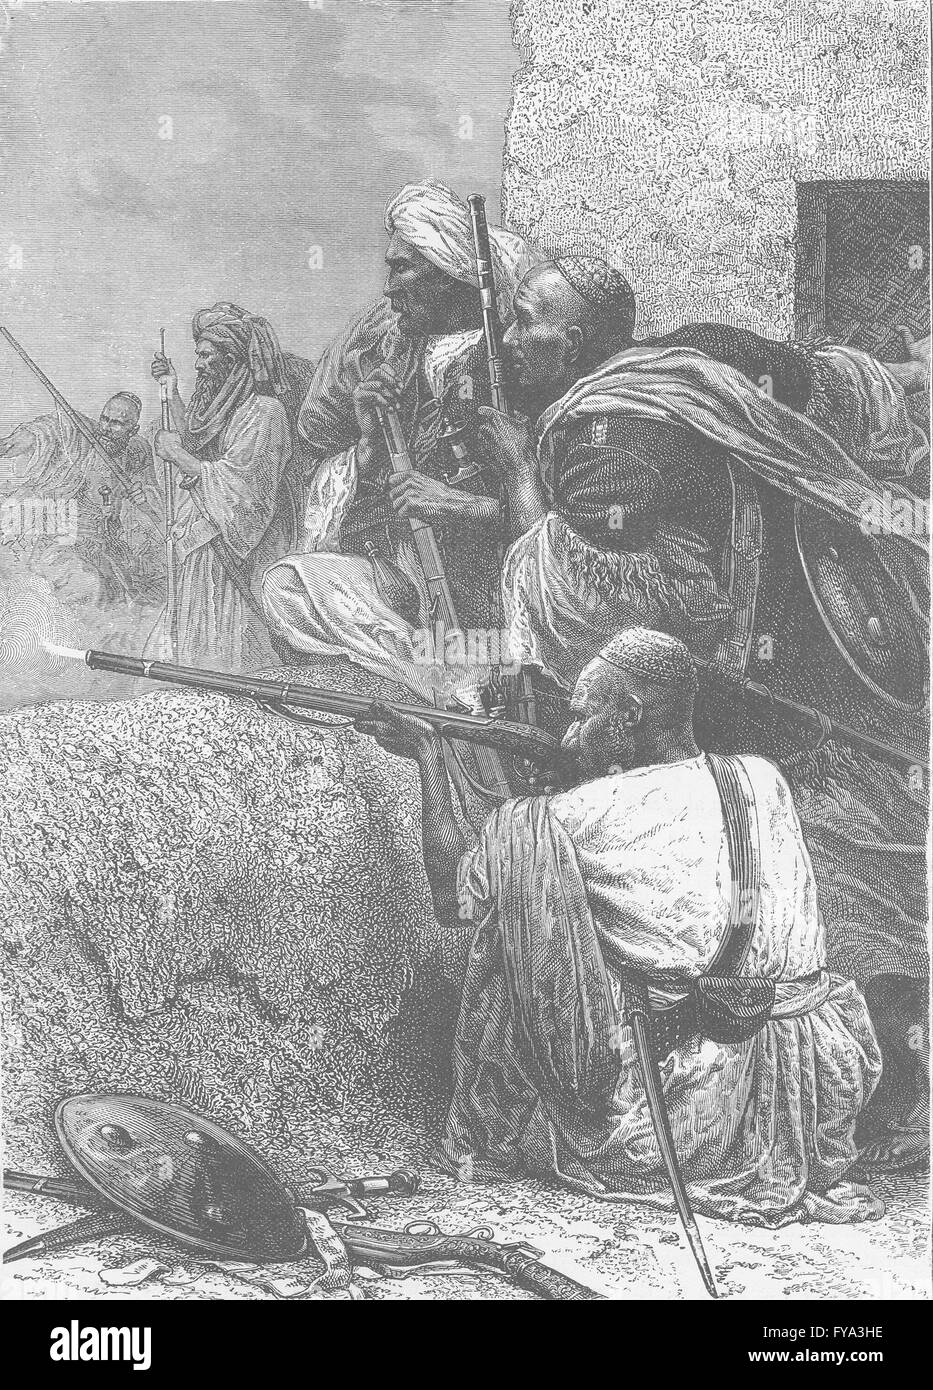 PAKISTAN : Afridis de tirer sur des troupes britanniques, antique print 1891 Banque D'Images